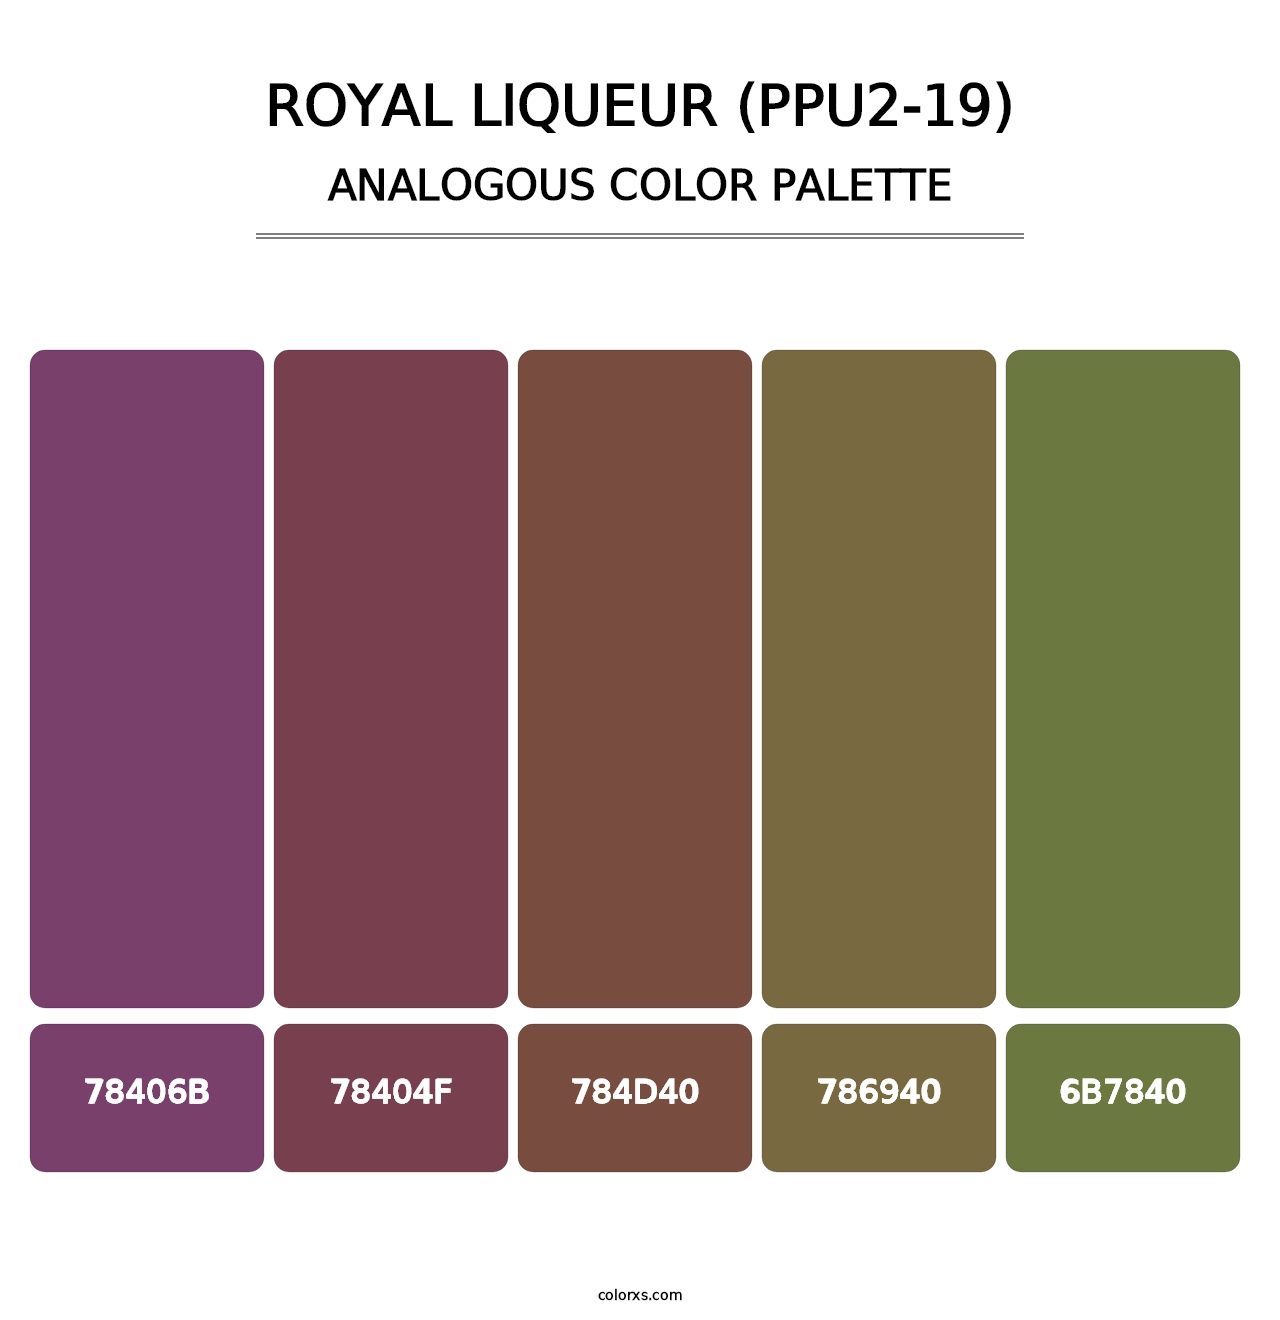 Royal Liqueur (PPU2-19) - Analogous Color Palette